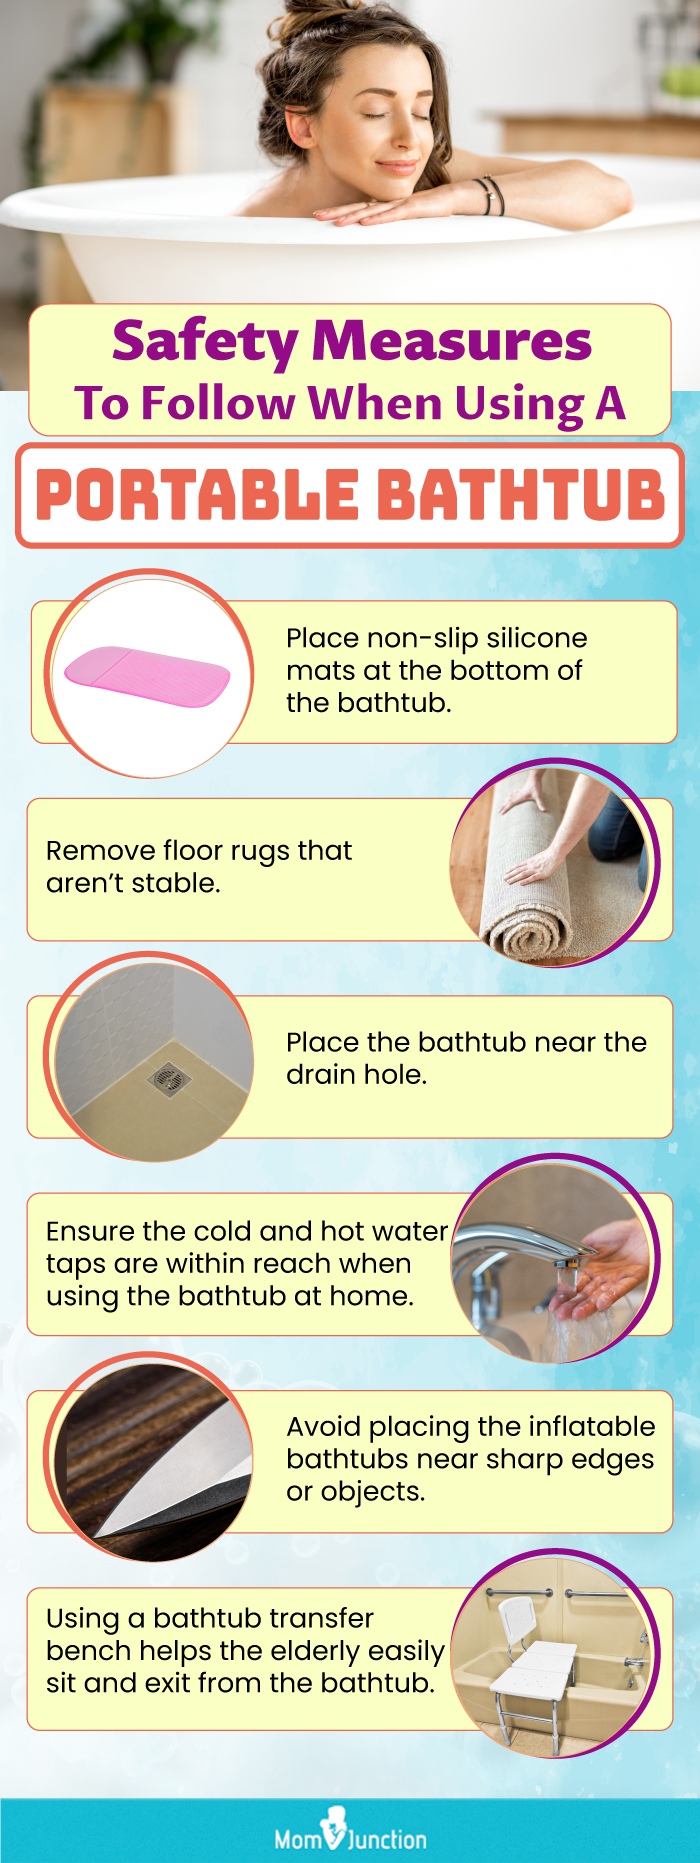 Safety Measure To Follow When Using a Portable Bathrub